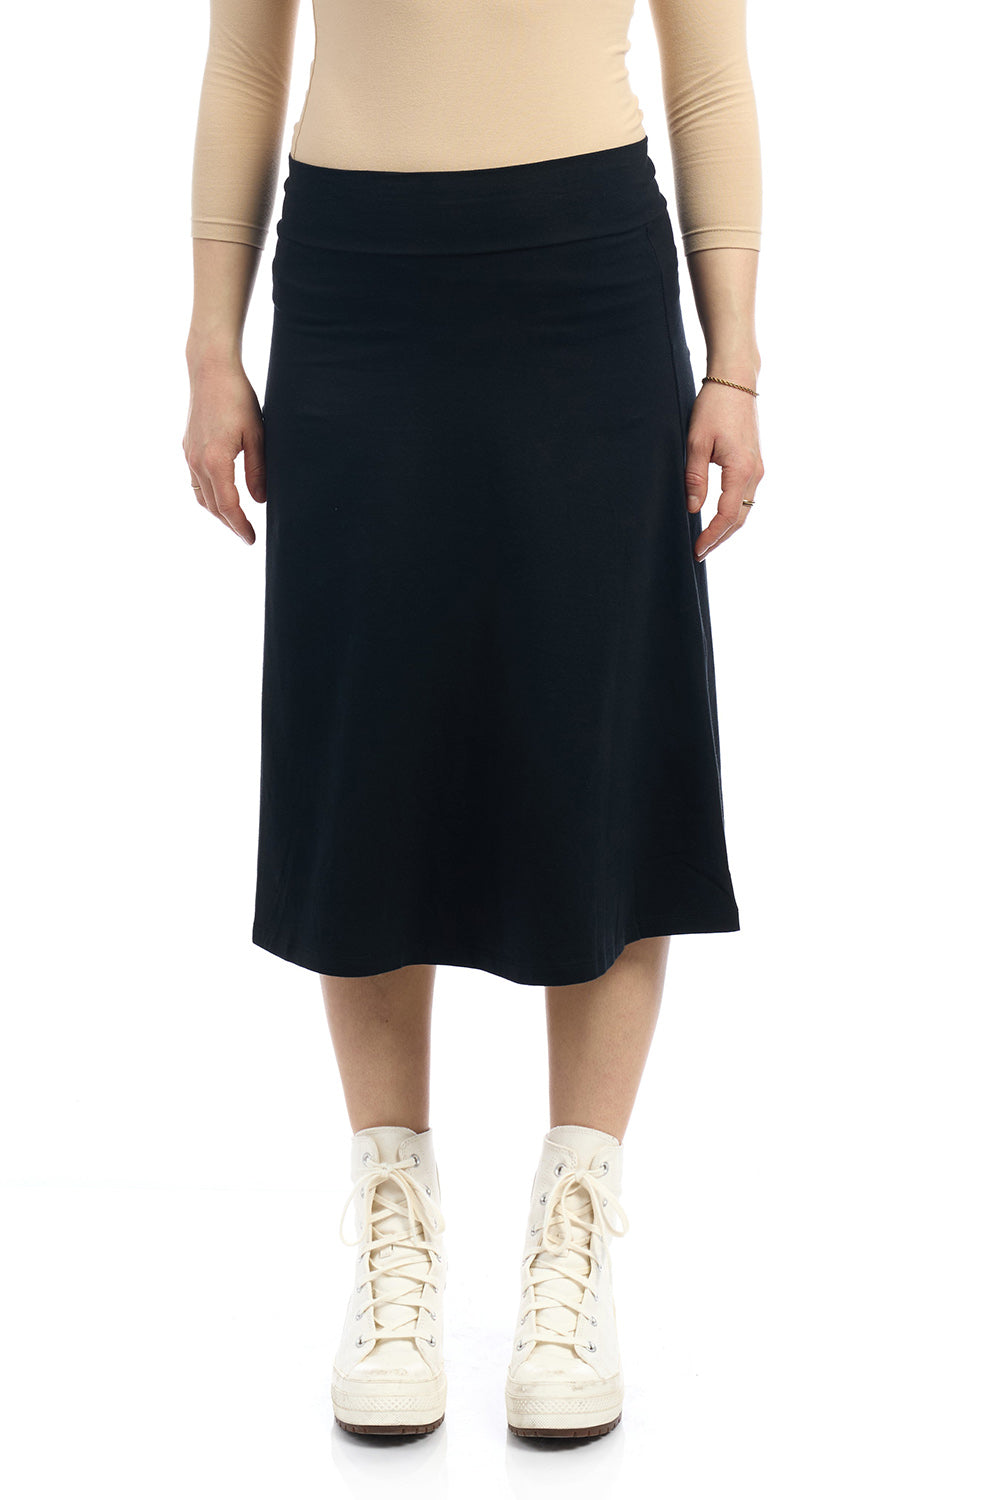 27 inch black a-line Midi length cotton skater skirt